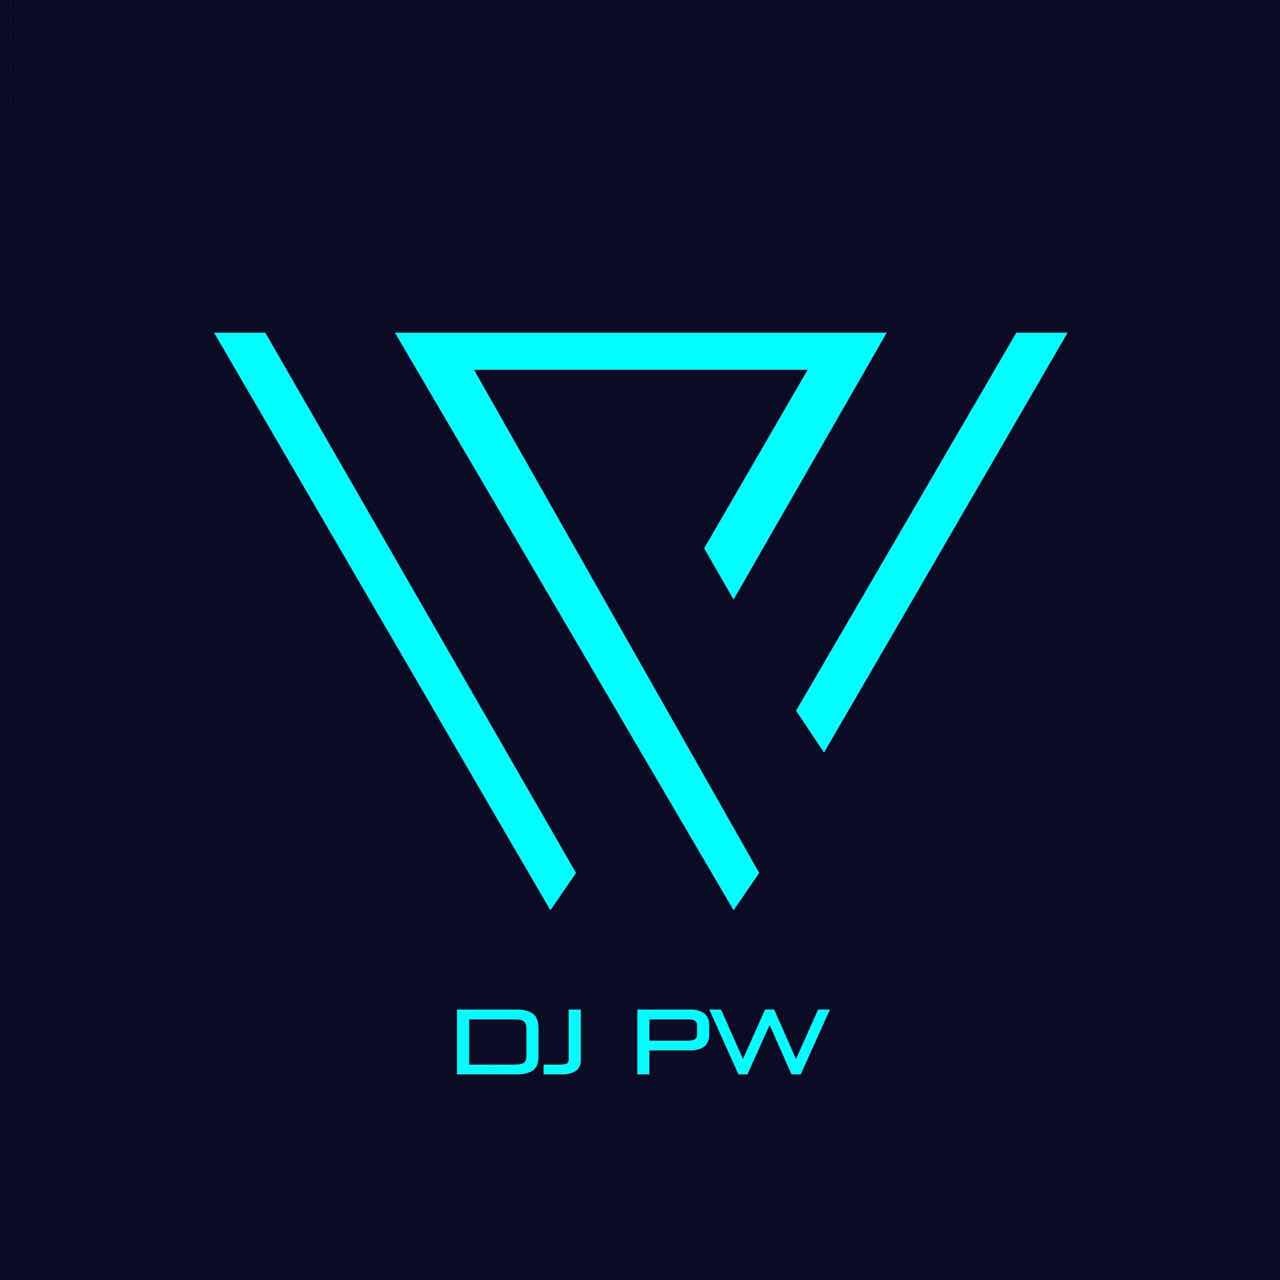 DJPW Remix